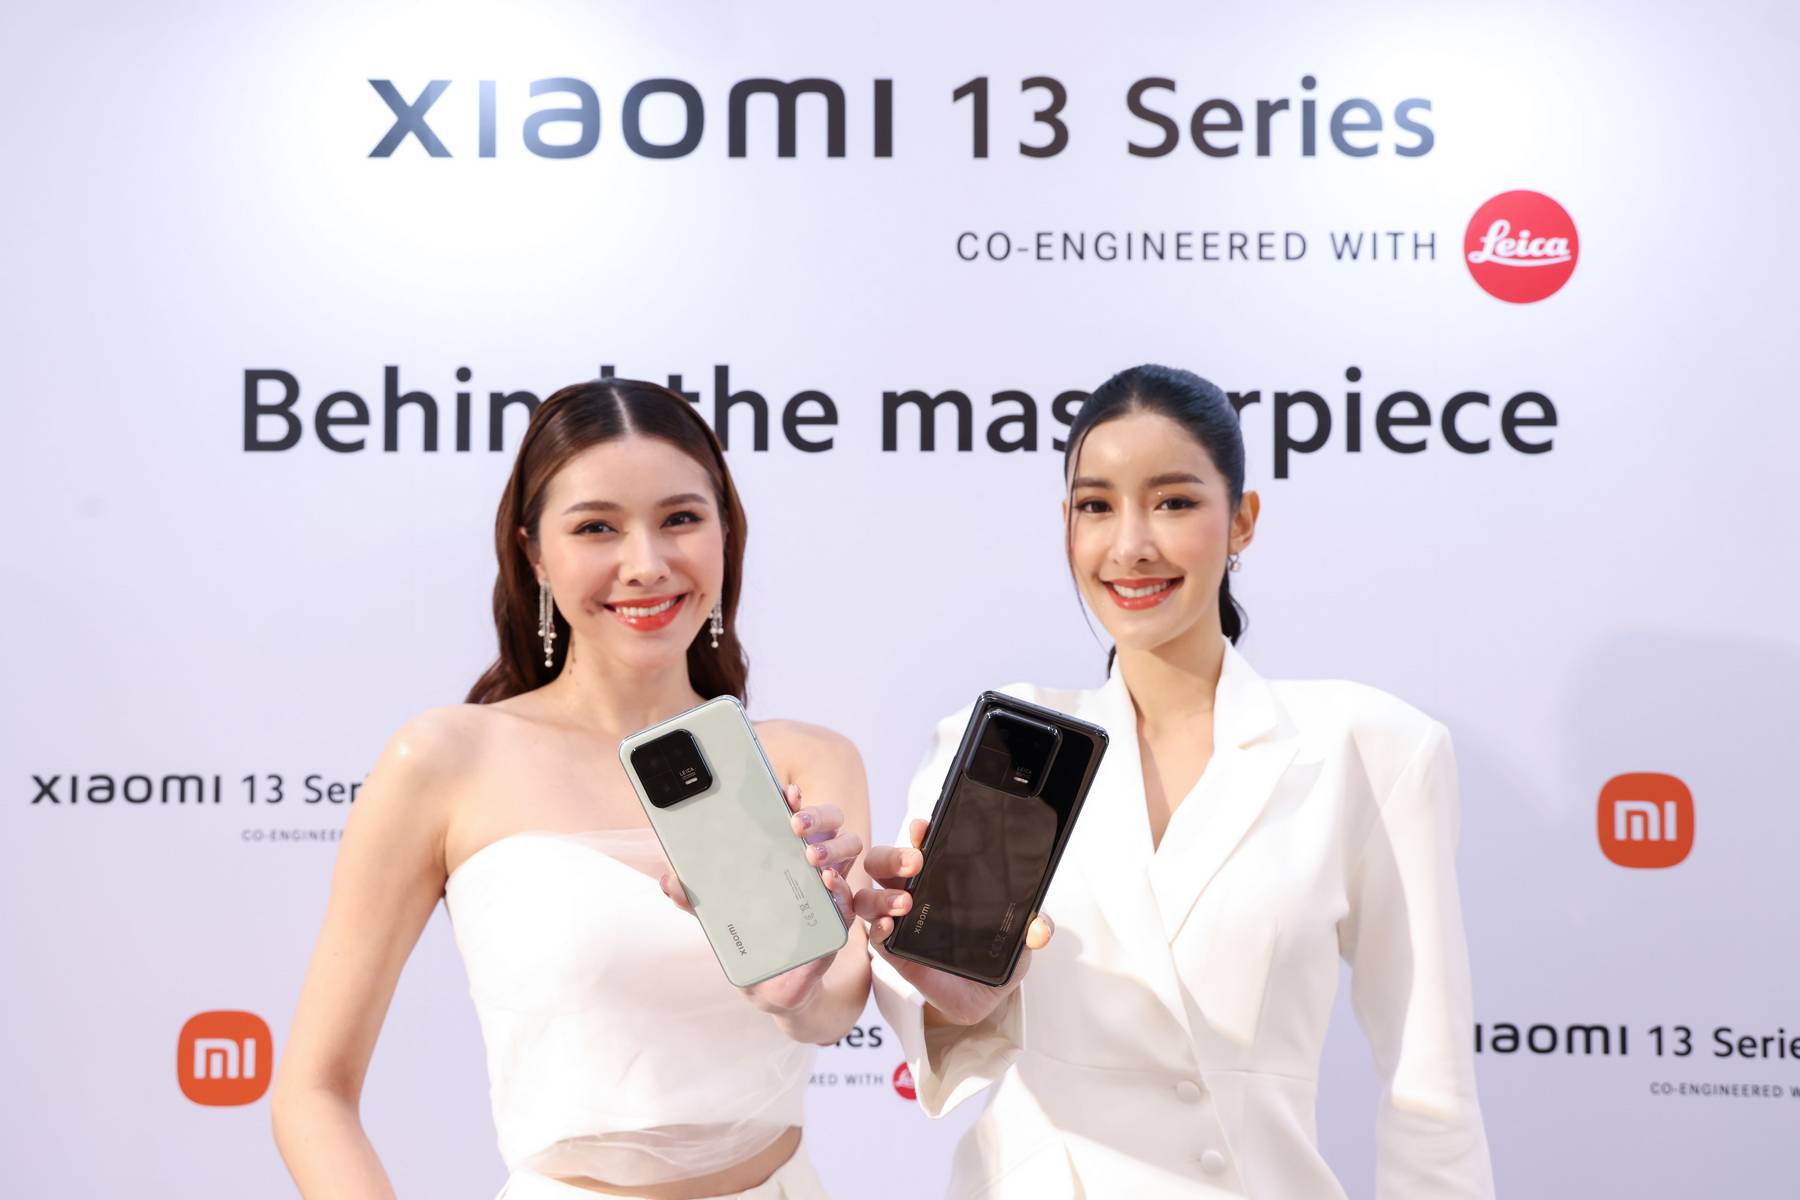 เสียวหมี่ ประเทศไทย เปิดตัว Xiaomi 13 Series co-engineered with Leica ให้เป็นเจ้าของแล้วในราคาเริ่มต้น 29,990 บาท